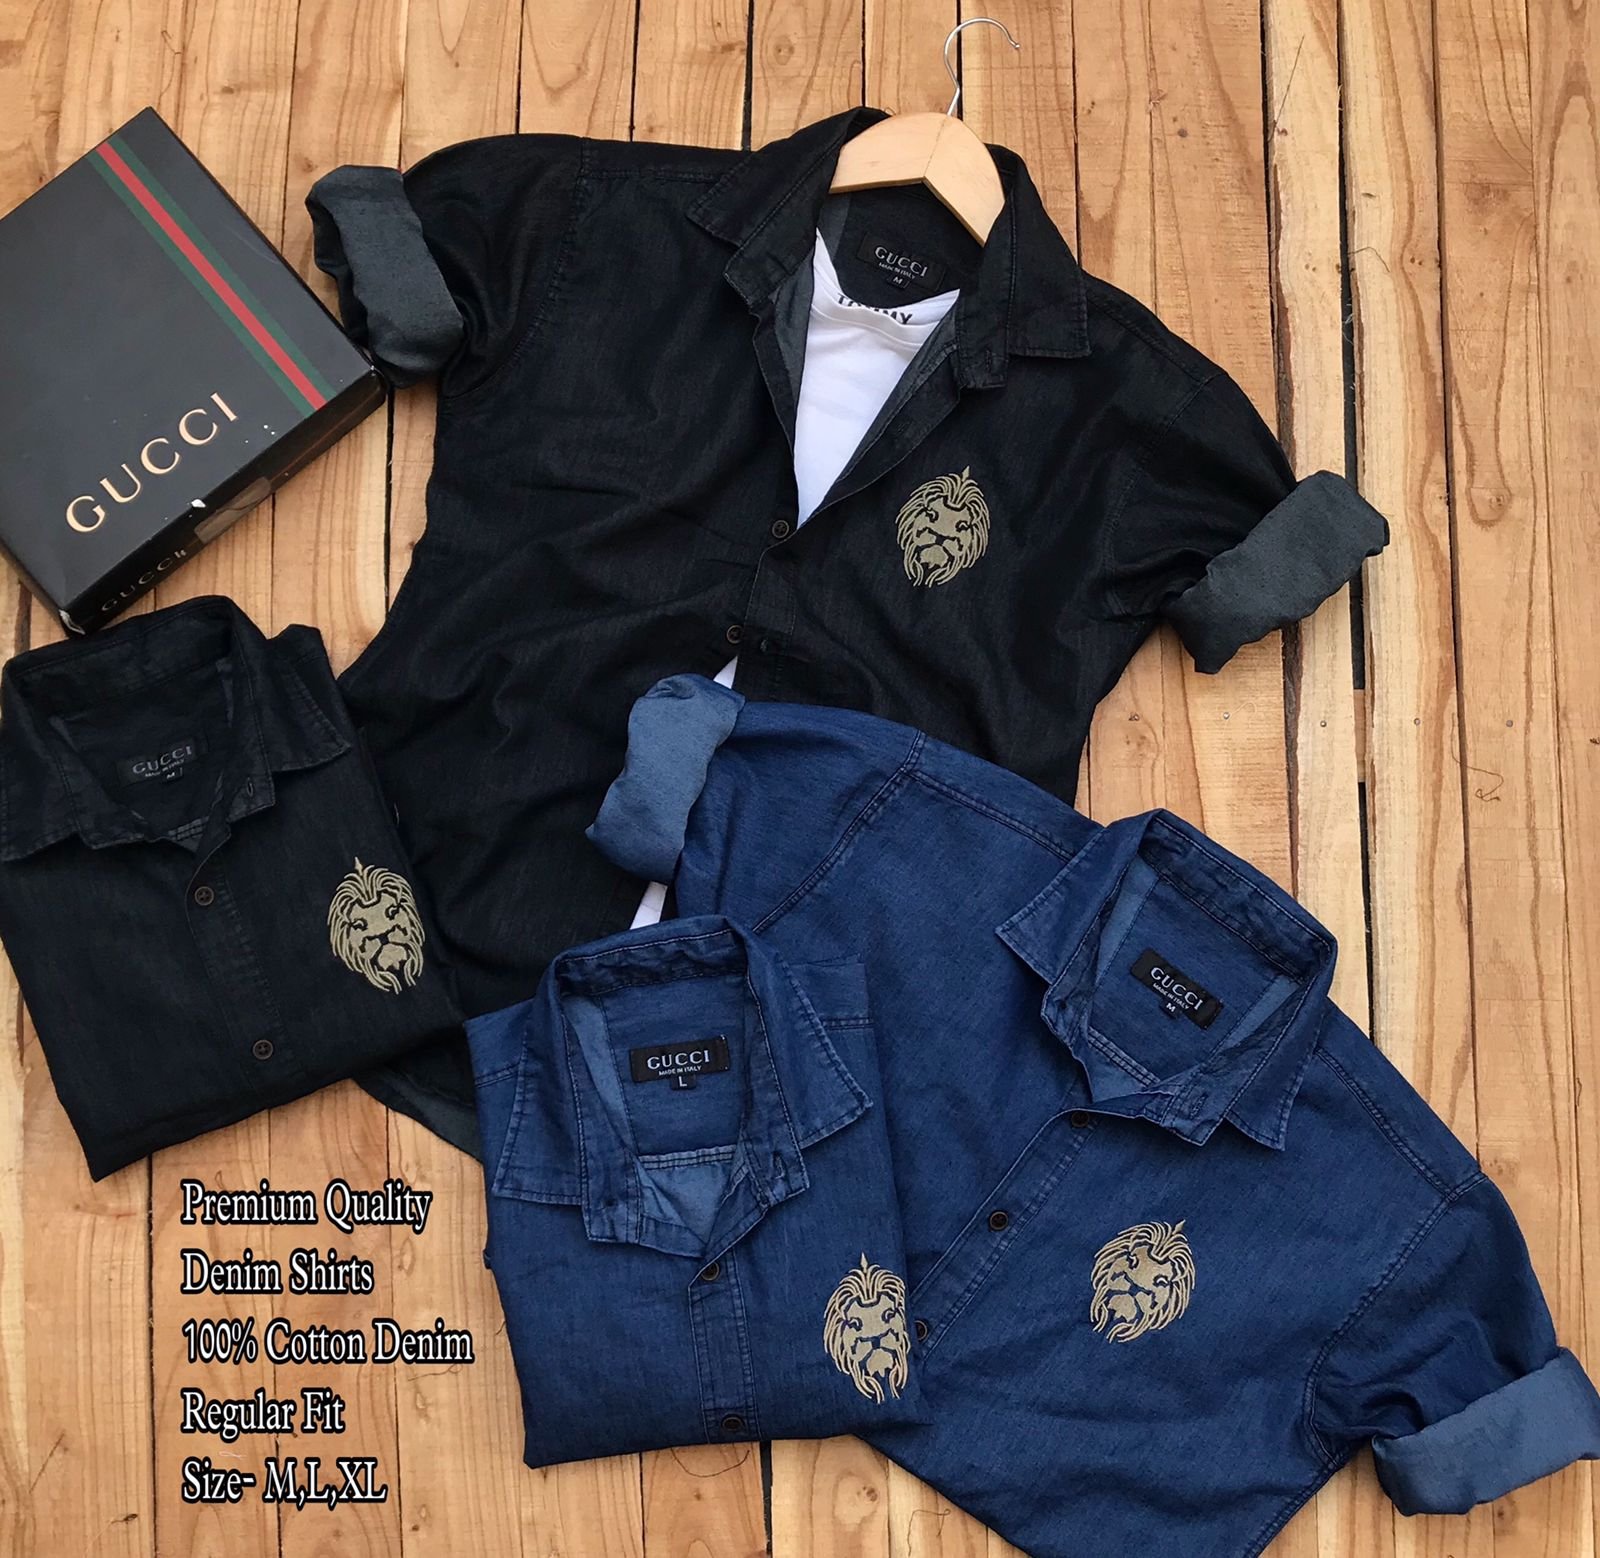 Men's branded full sleeve denim Shirt - Evilato collection of shirts